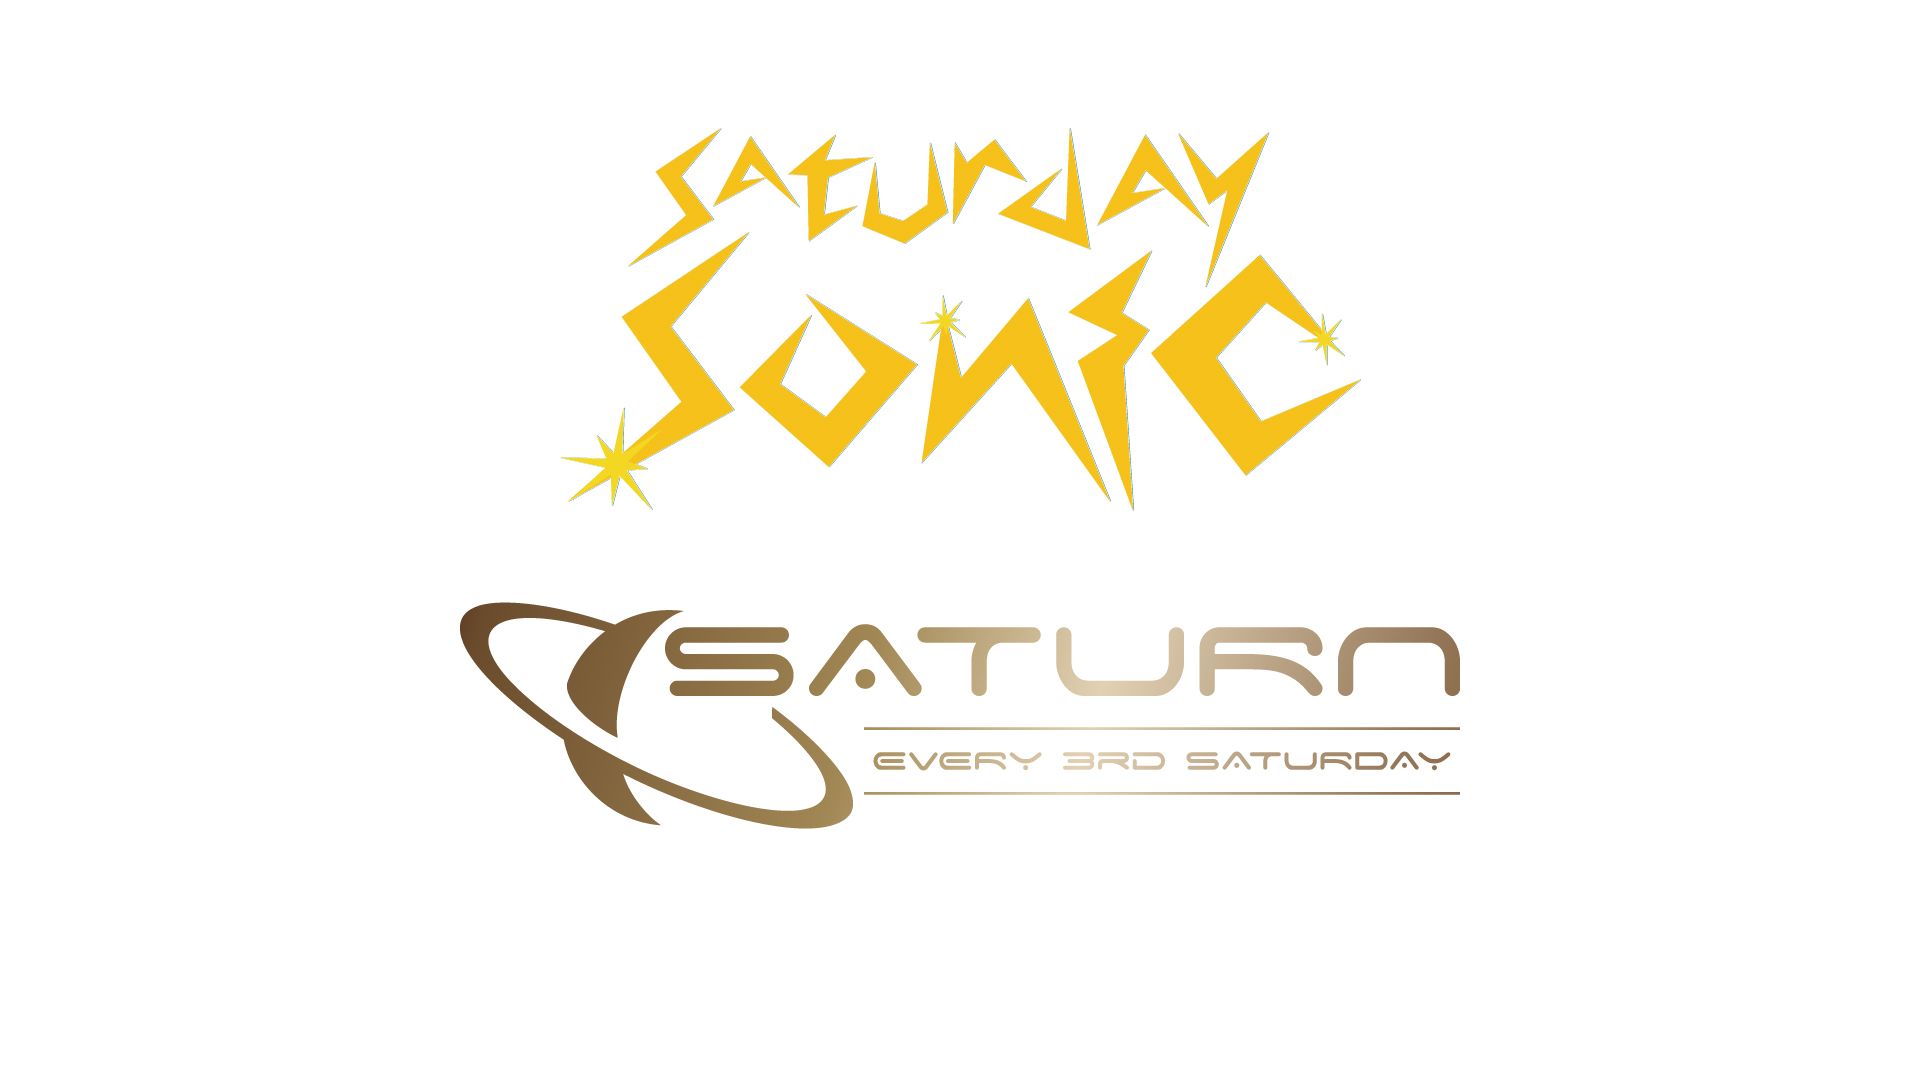  【 SATURDAY SONIC / Saturn 】